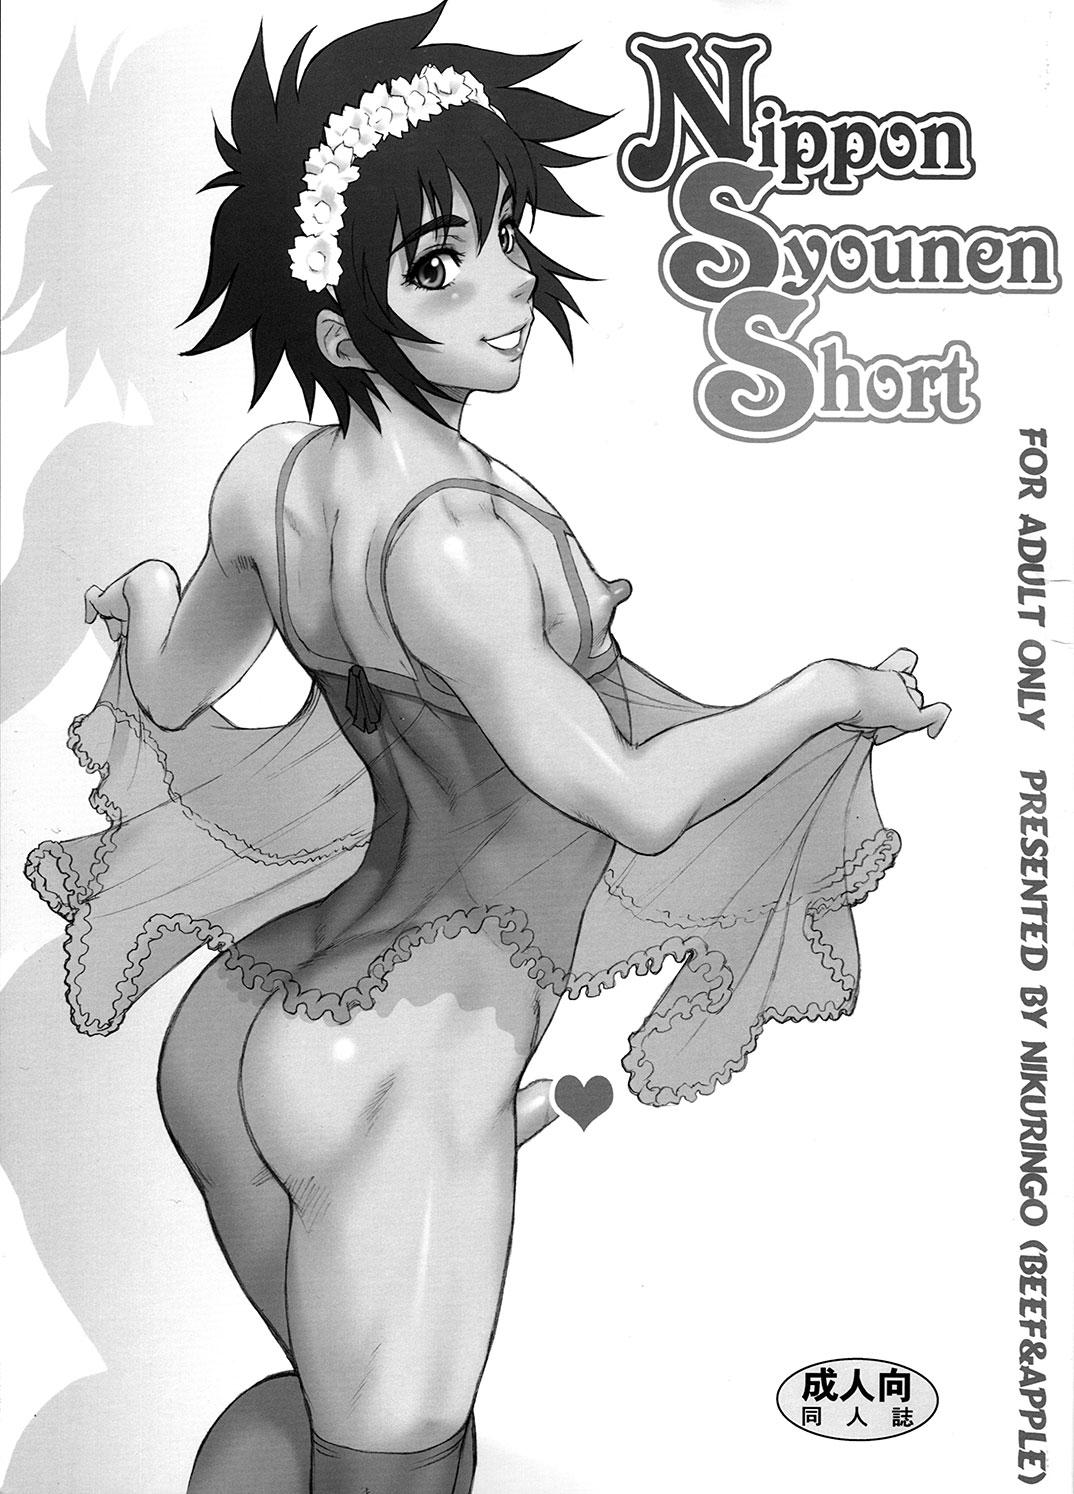 Nippon Syounen Short 0